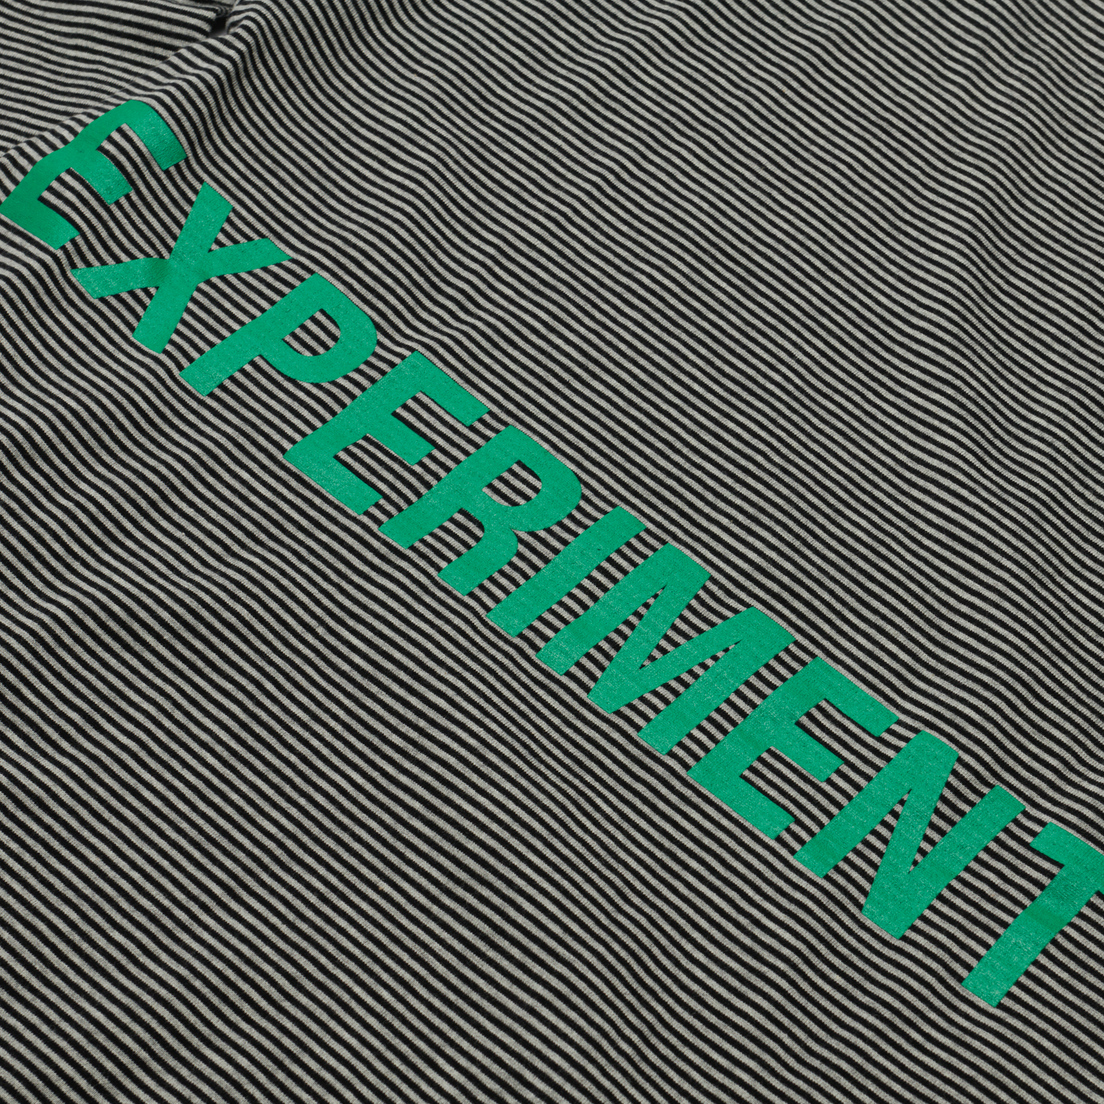 uniform experiment